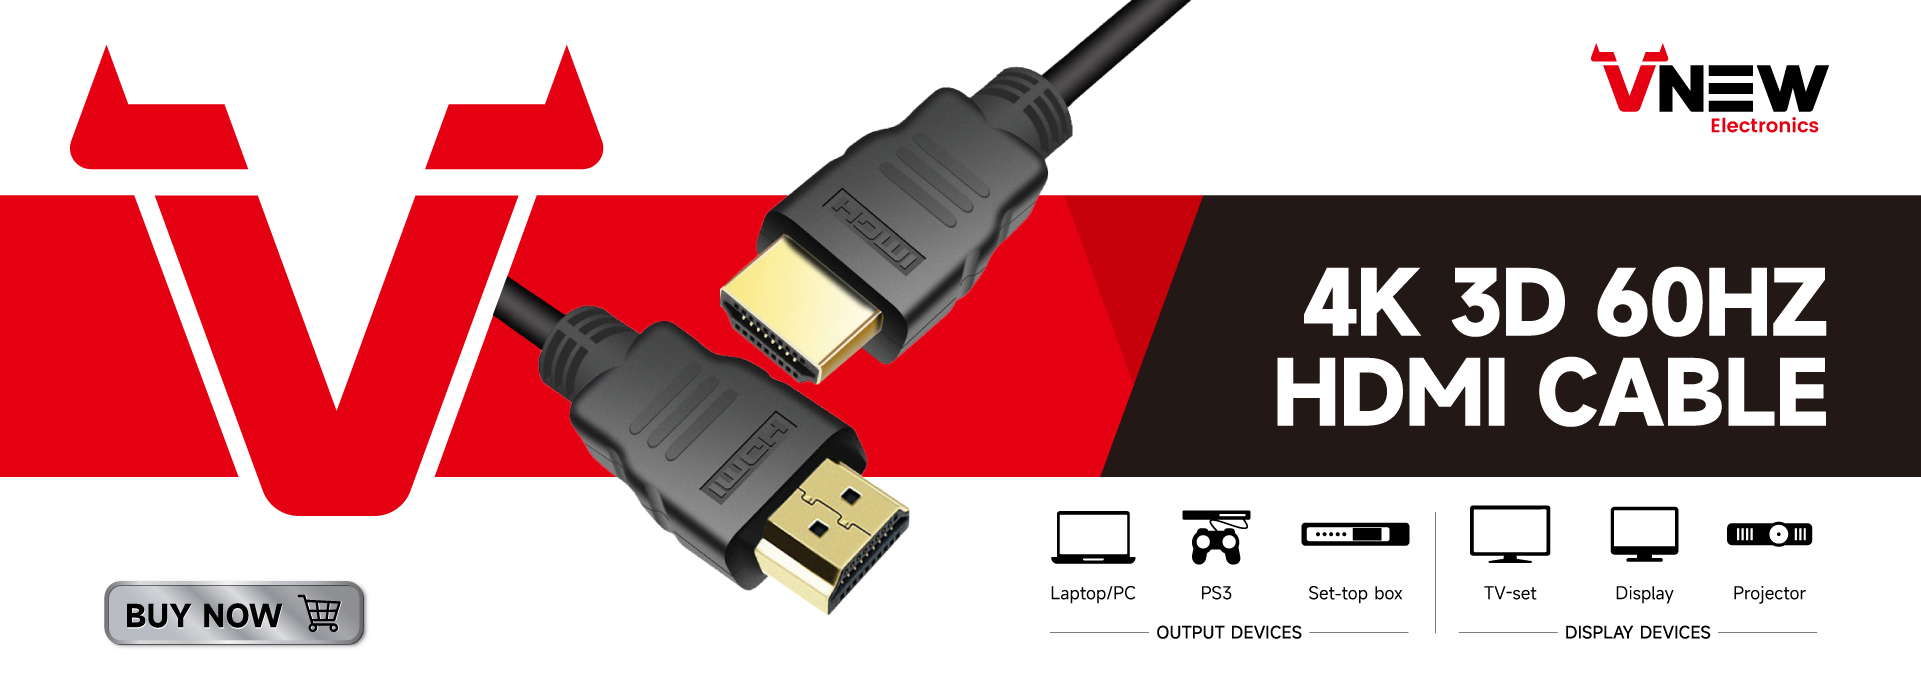 VN-HDP01 Vnew հարմարեցված երկարությամբ էկրանի պորտ դեպի HDMI մալուխ 4K 60 Հց DP